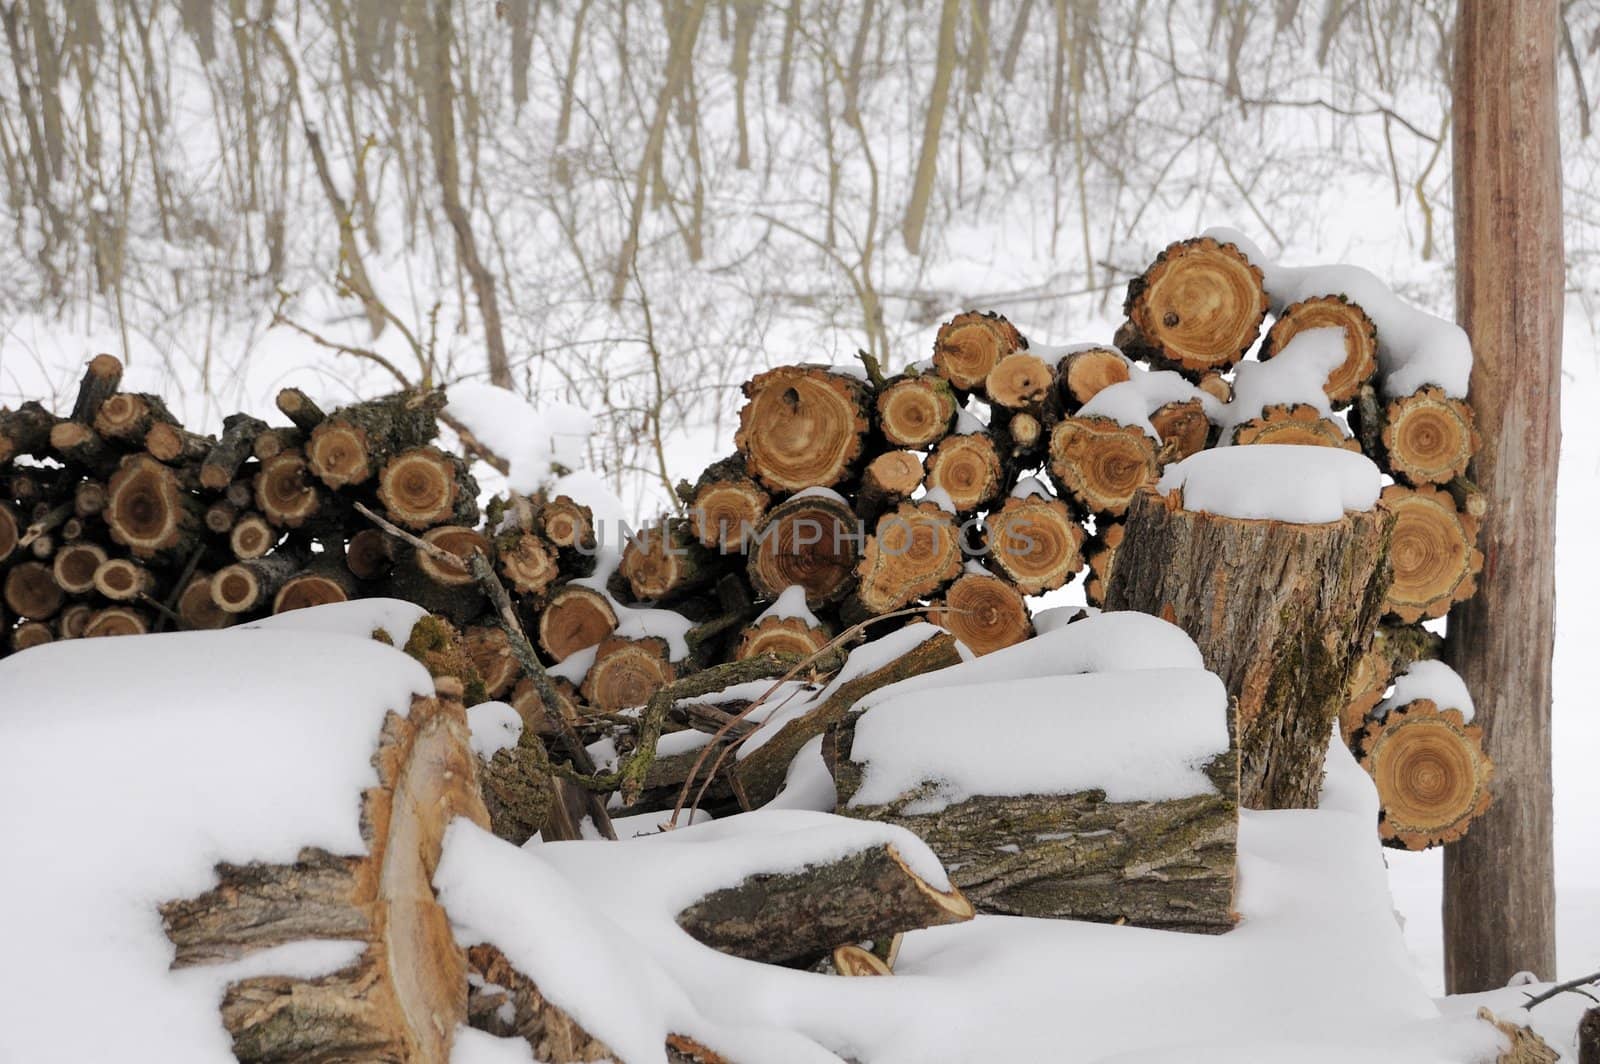 firewoods by kasim